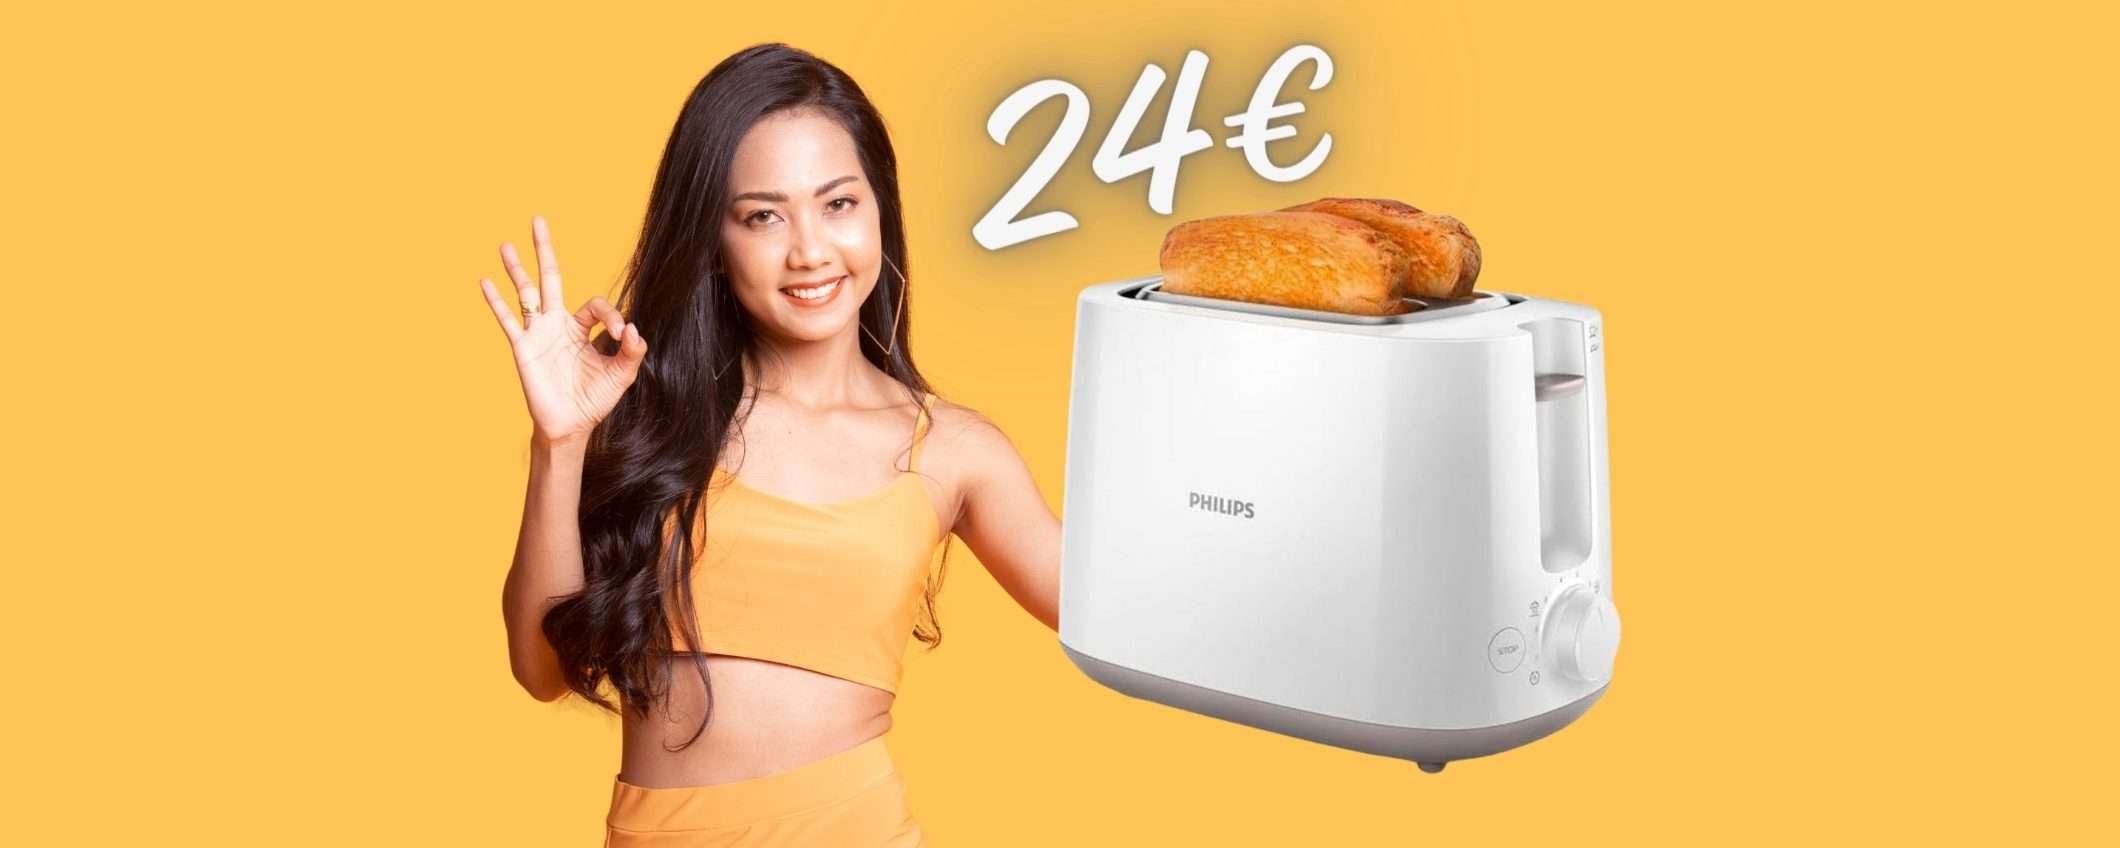 Solo 24€ per il tostapane Philips con 8 impostazioni: OFFERTA Amazon